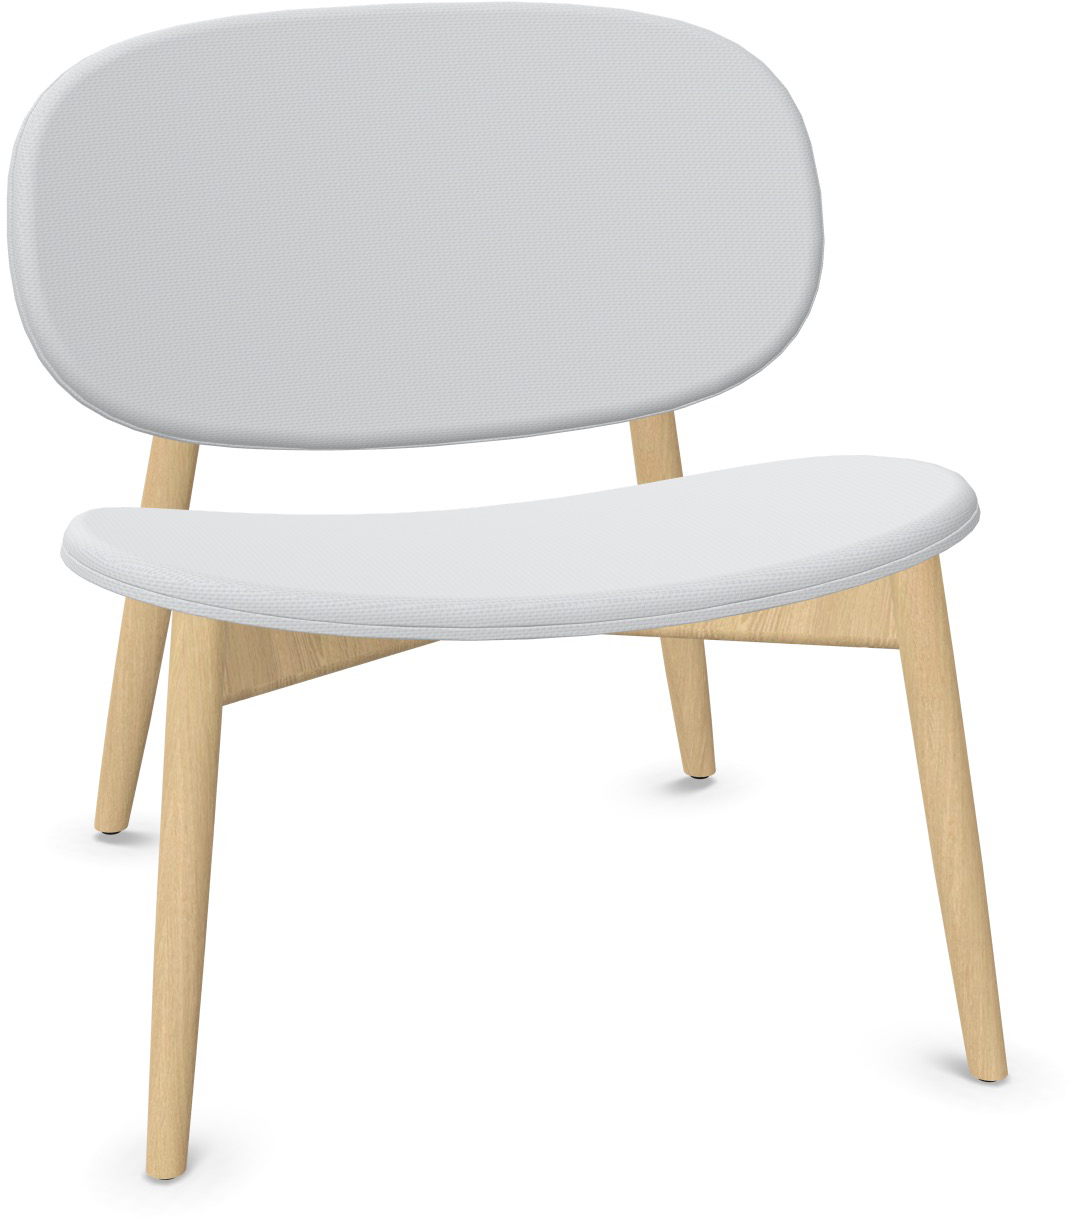 HARMO Relaxsessel in Grau präsentiert im Onlineshop von KAQTU Design AG. Sessel ist von Infiniti Design